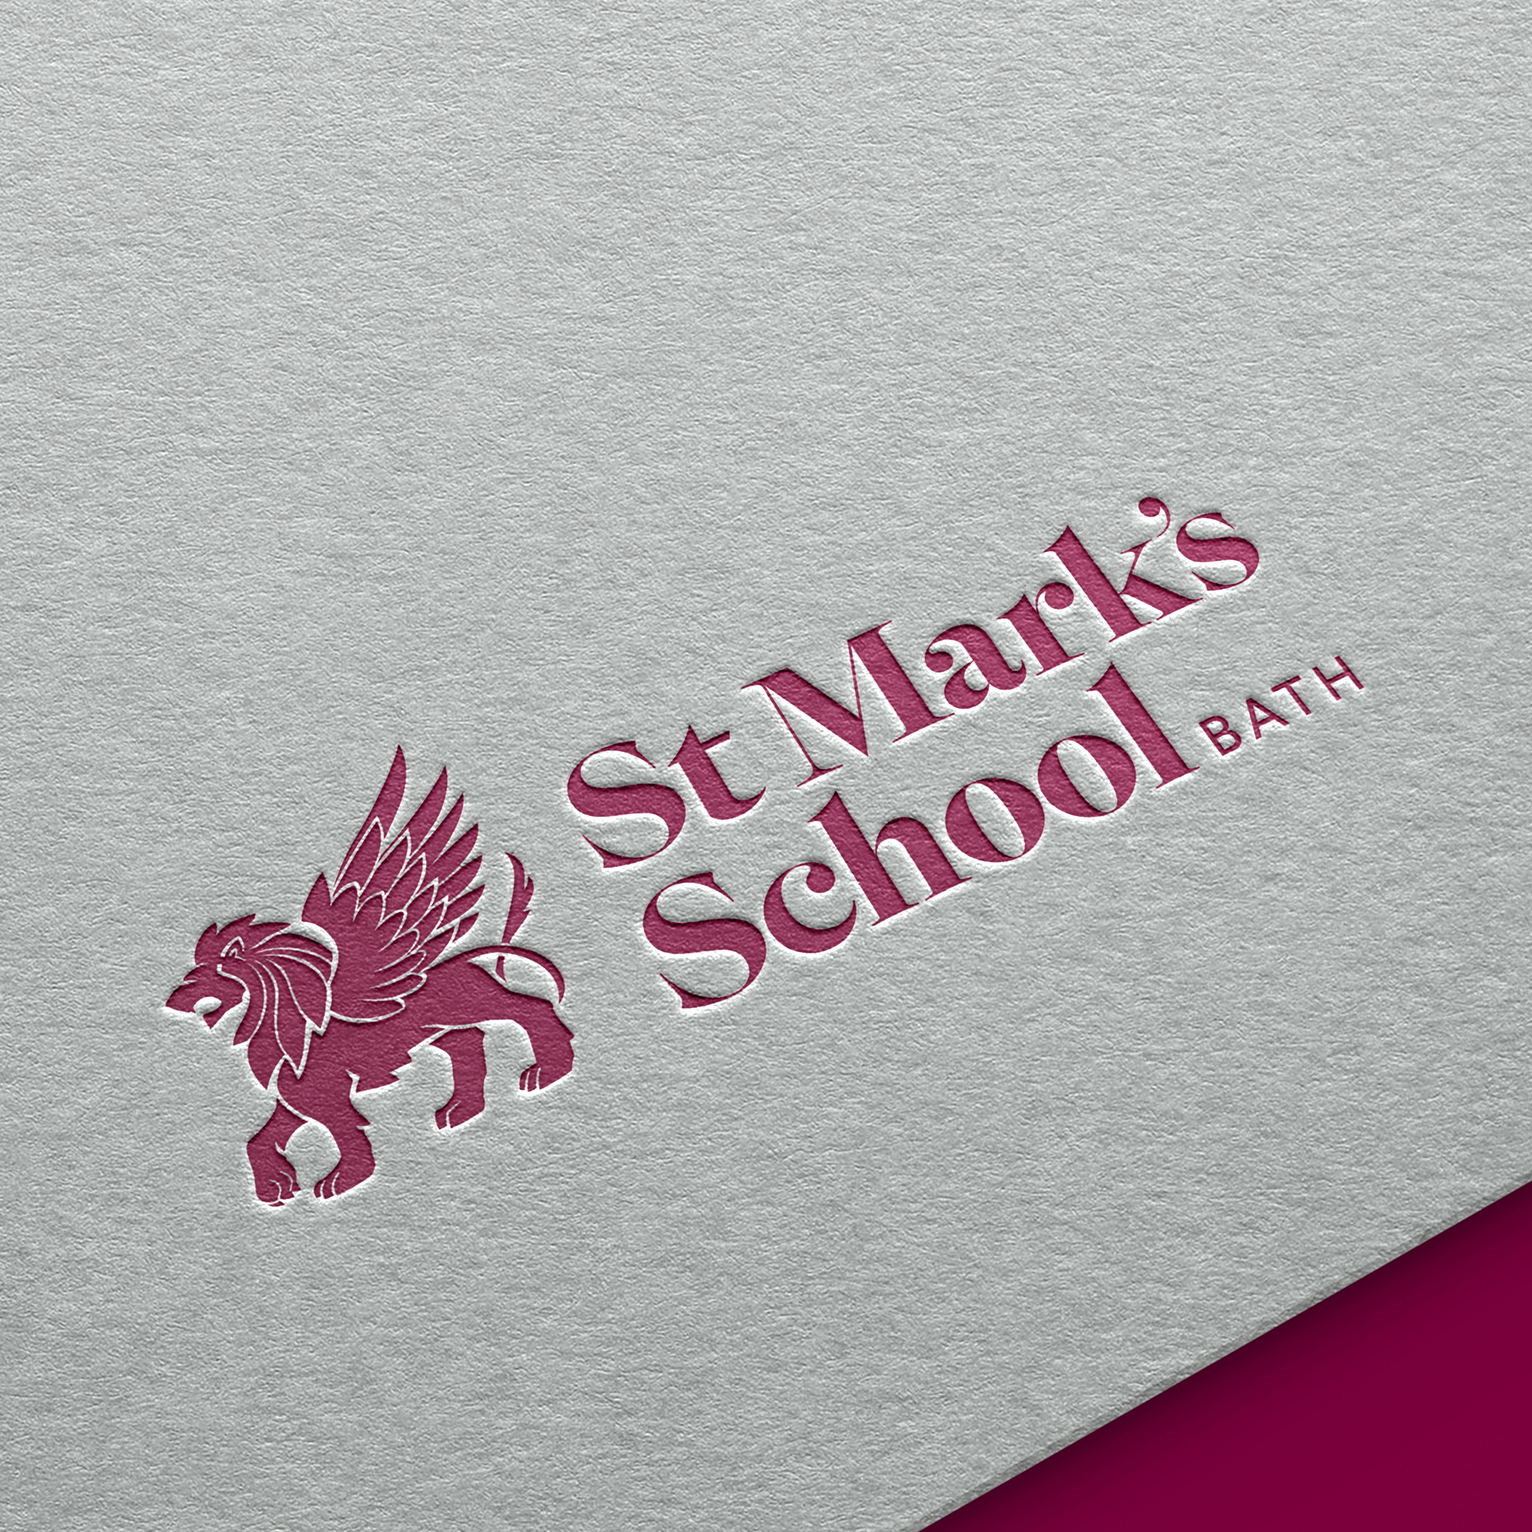 News Ar St Marks Logo 0822 01